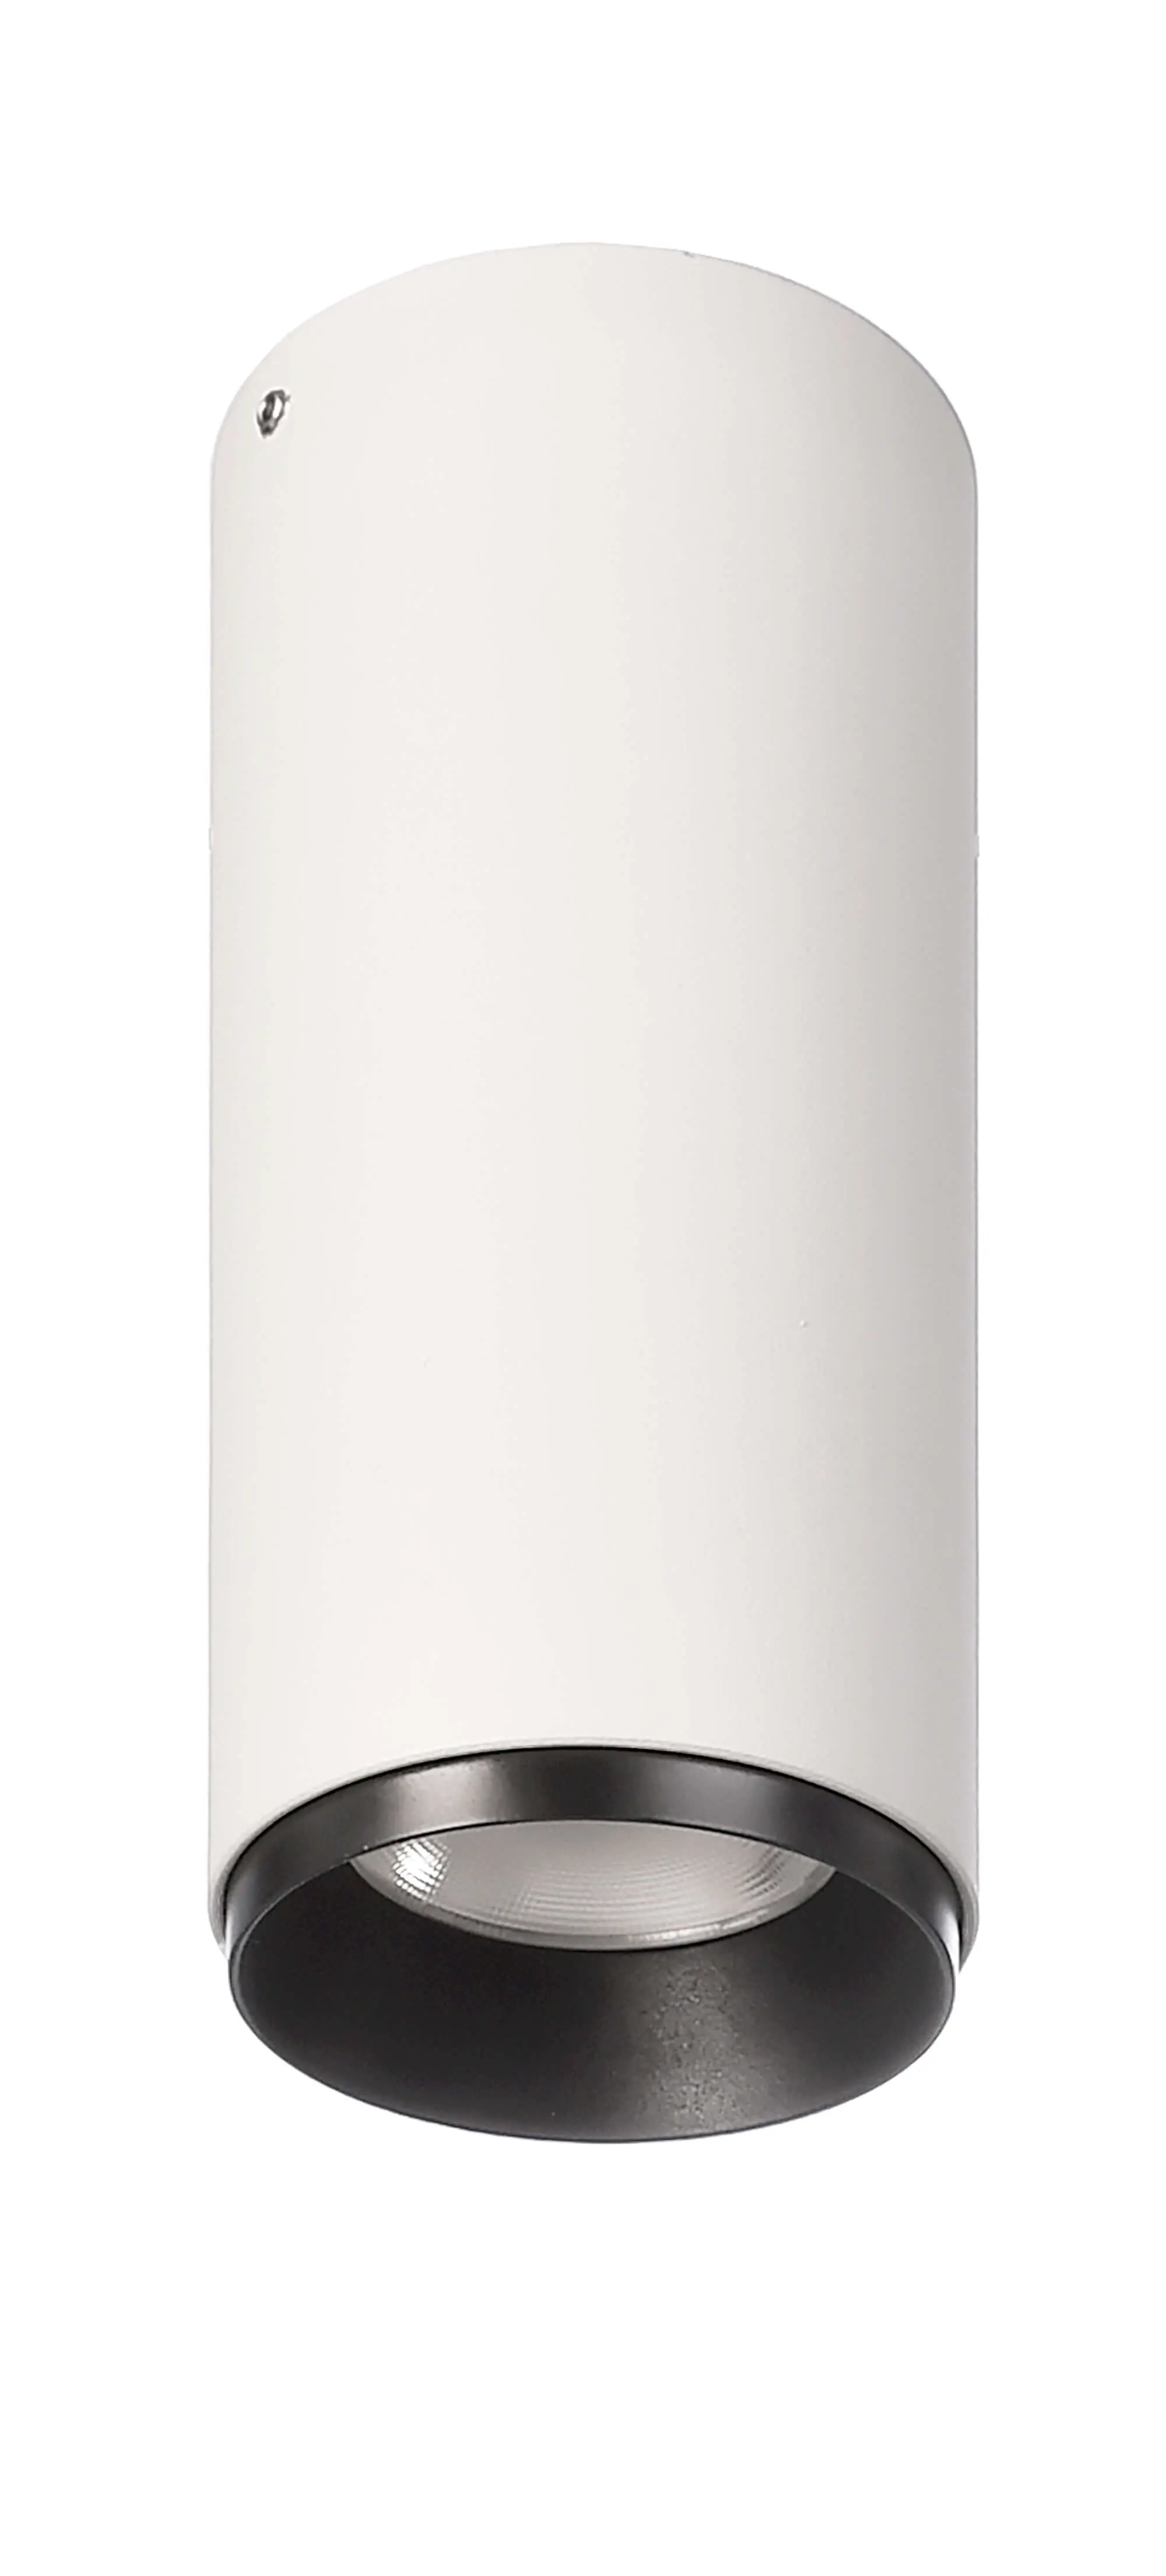 LED-Deckenspot Lucea 10 dimmbar weiß 10W 2700K 800lm